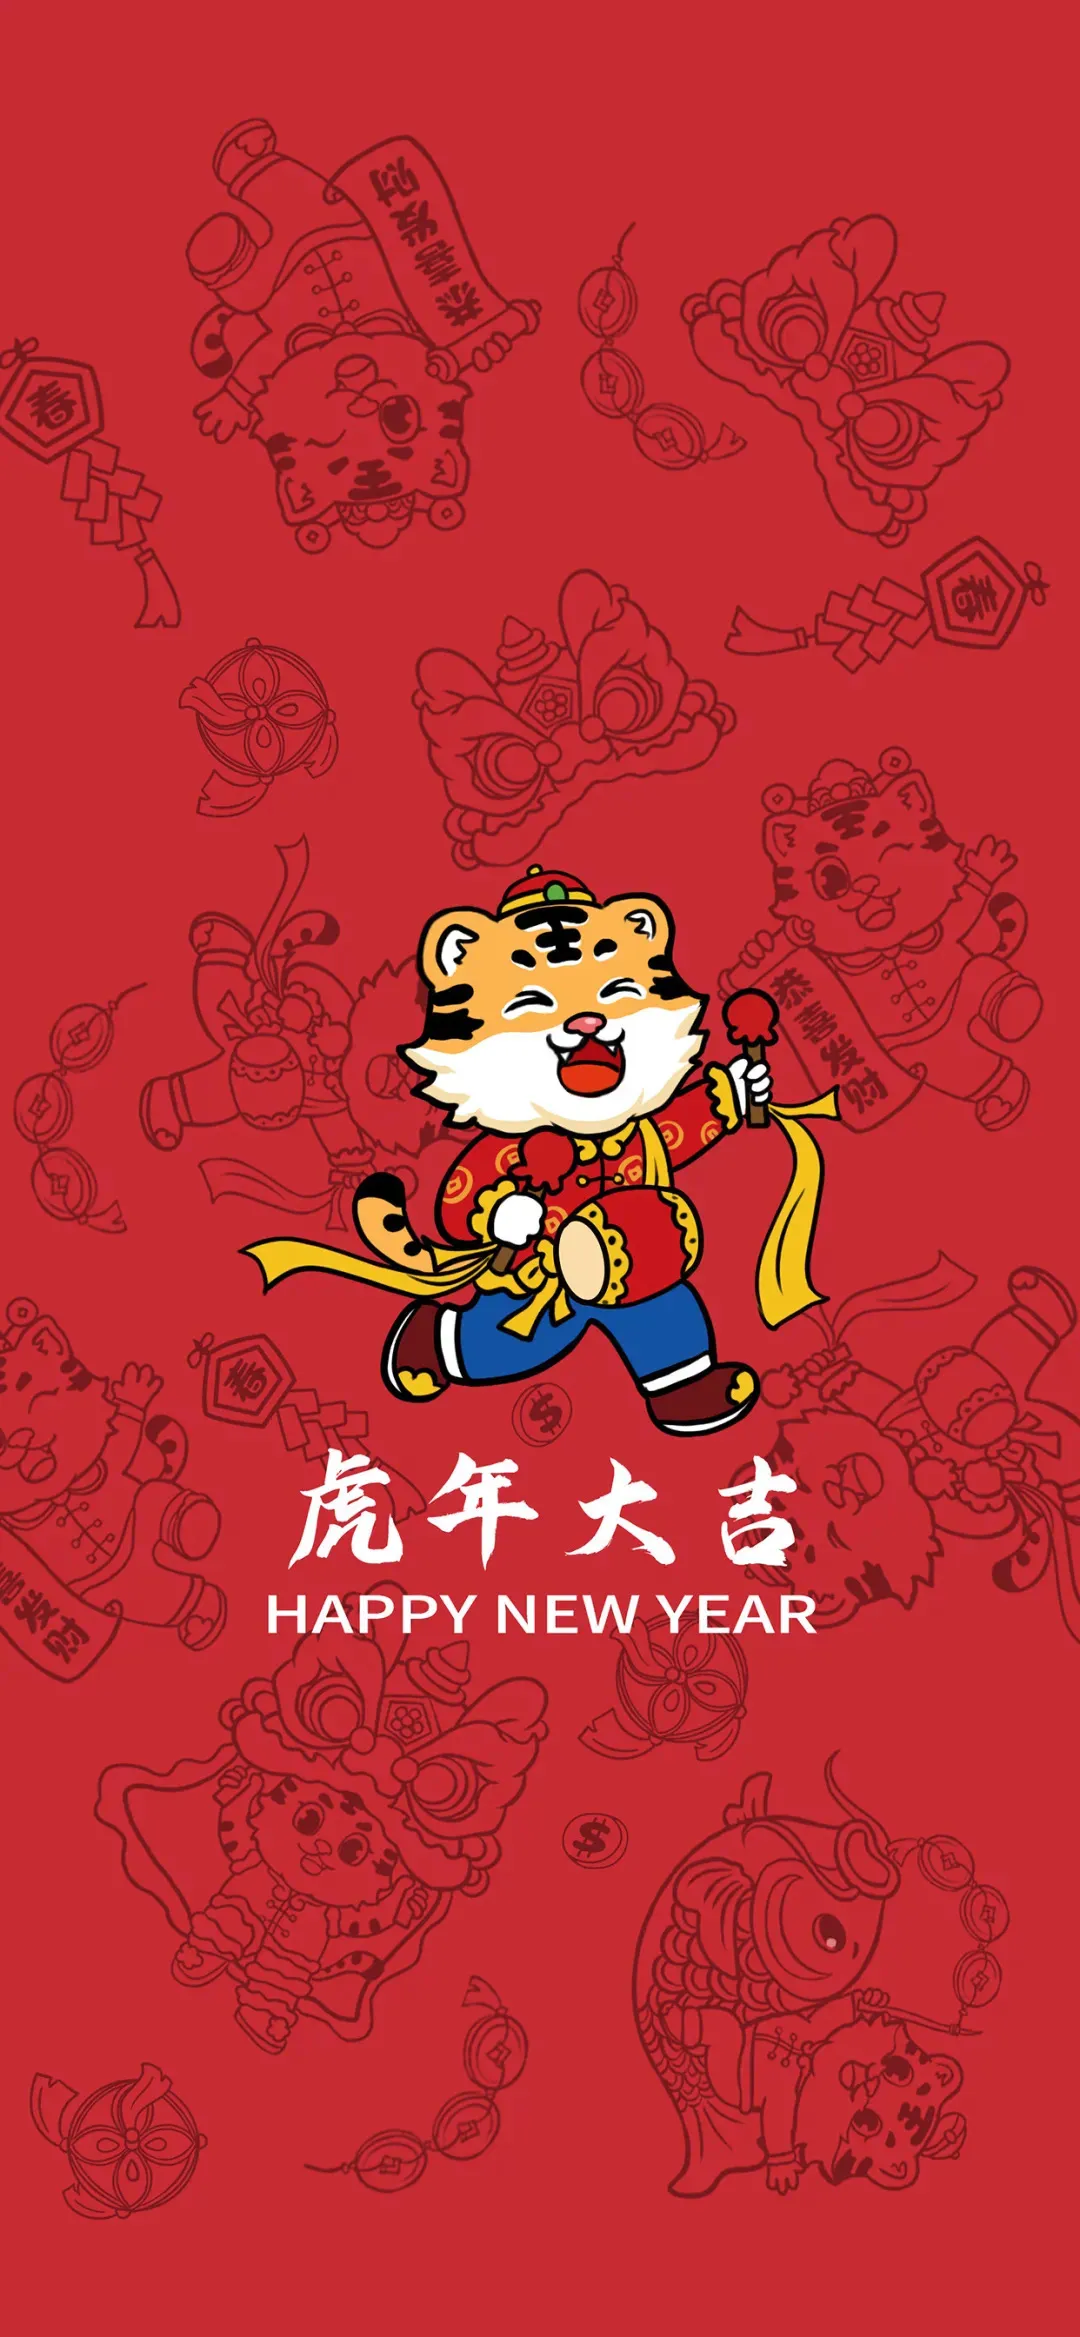 2022虎牛年经典春节问候祝福语大全,祝您新年快乐